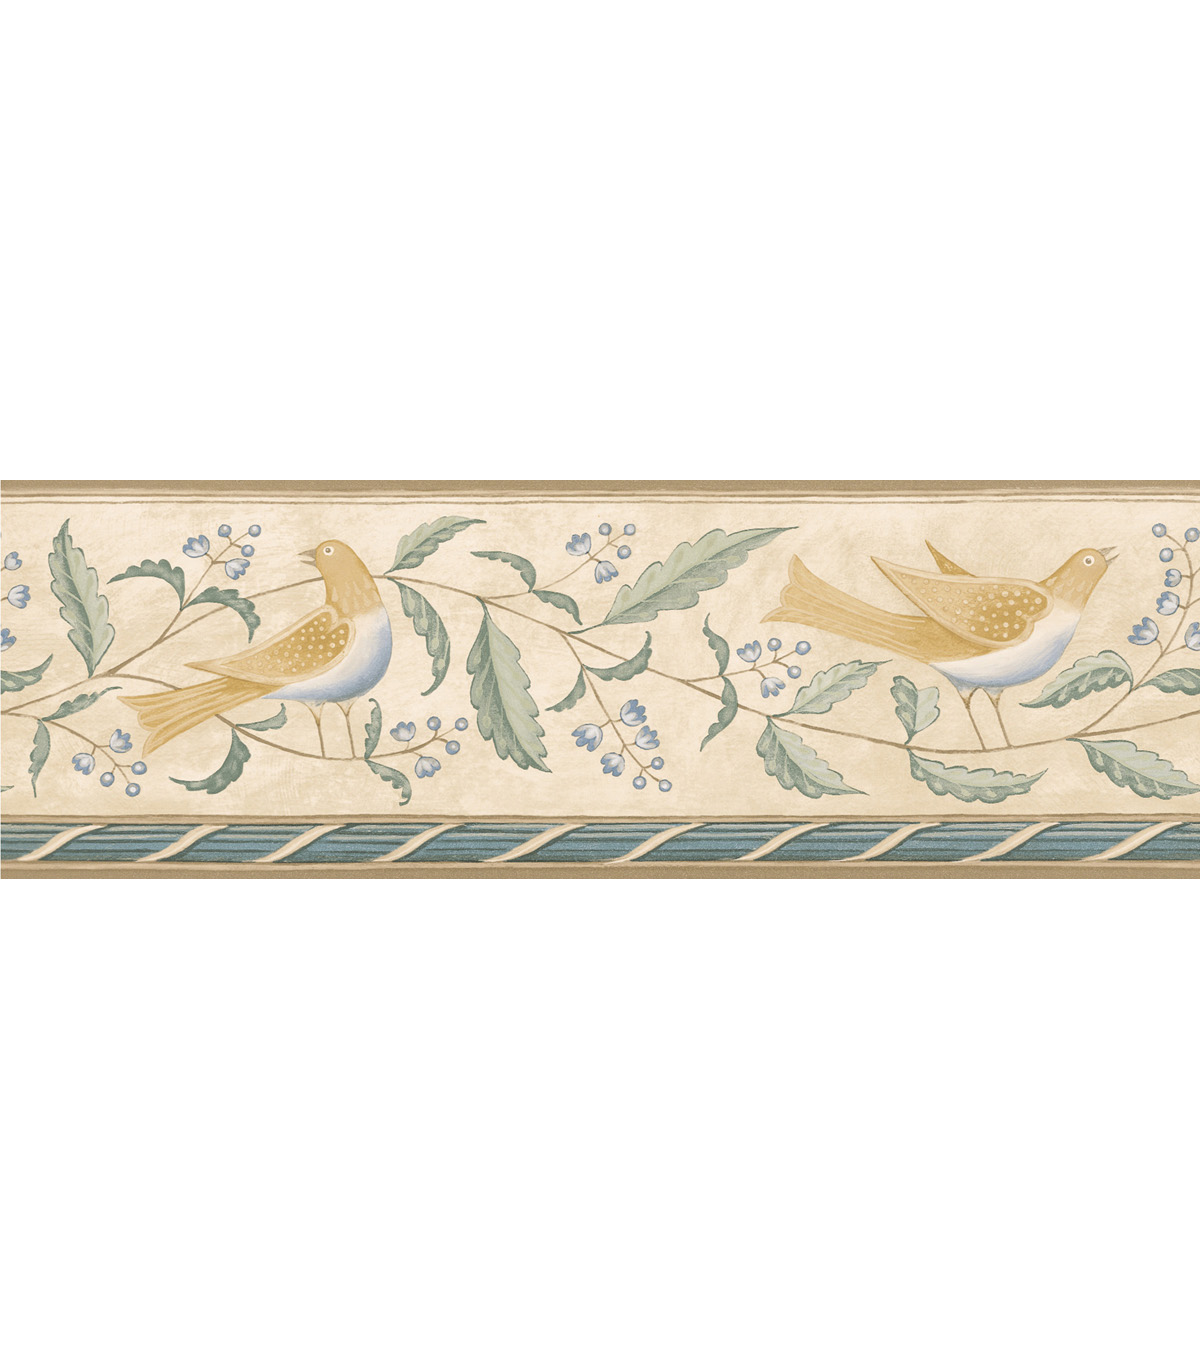 Folk Art Floral Bird Wallpaper Border Creamfolk